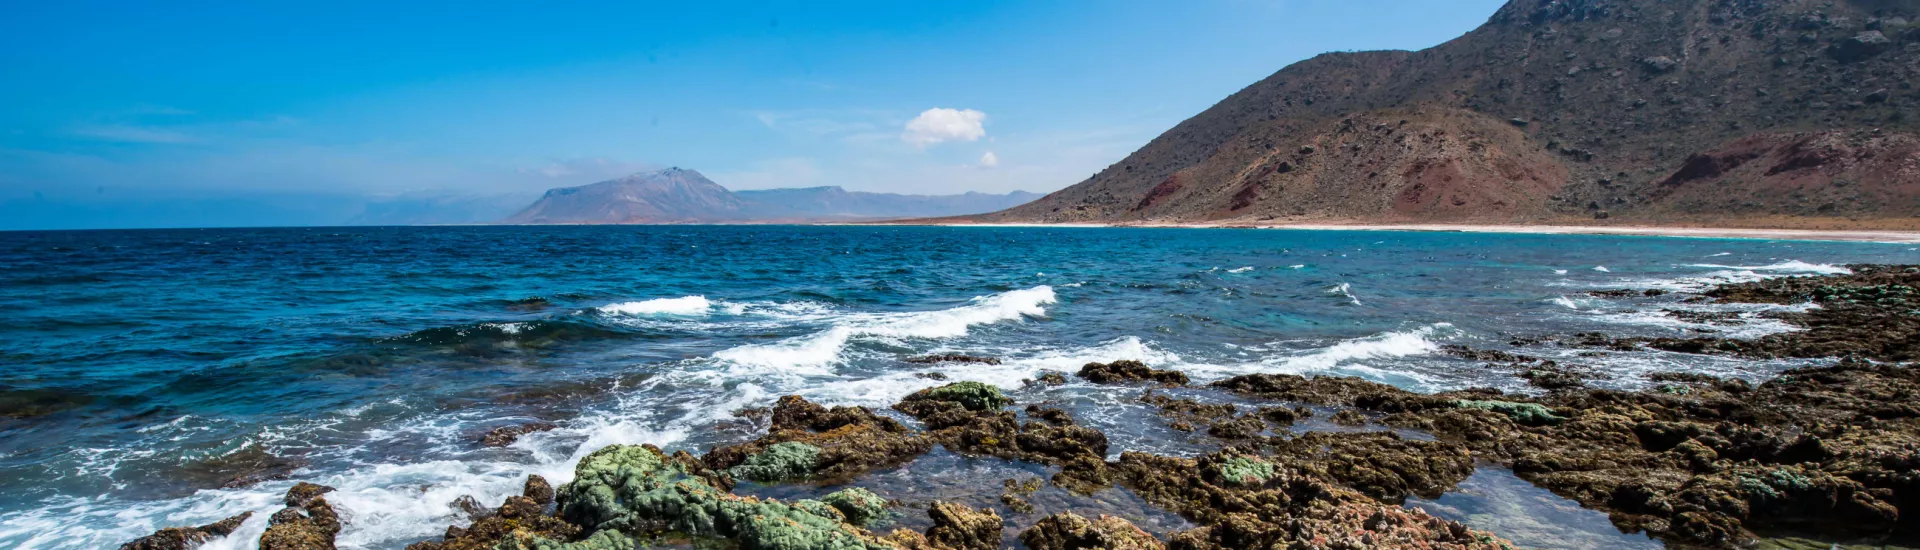 Panoramic view of Socotra Island, Yemen